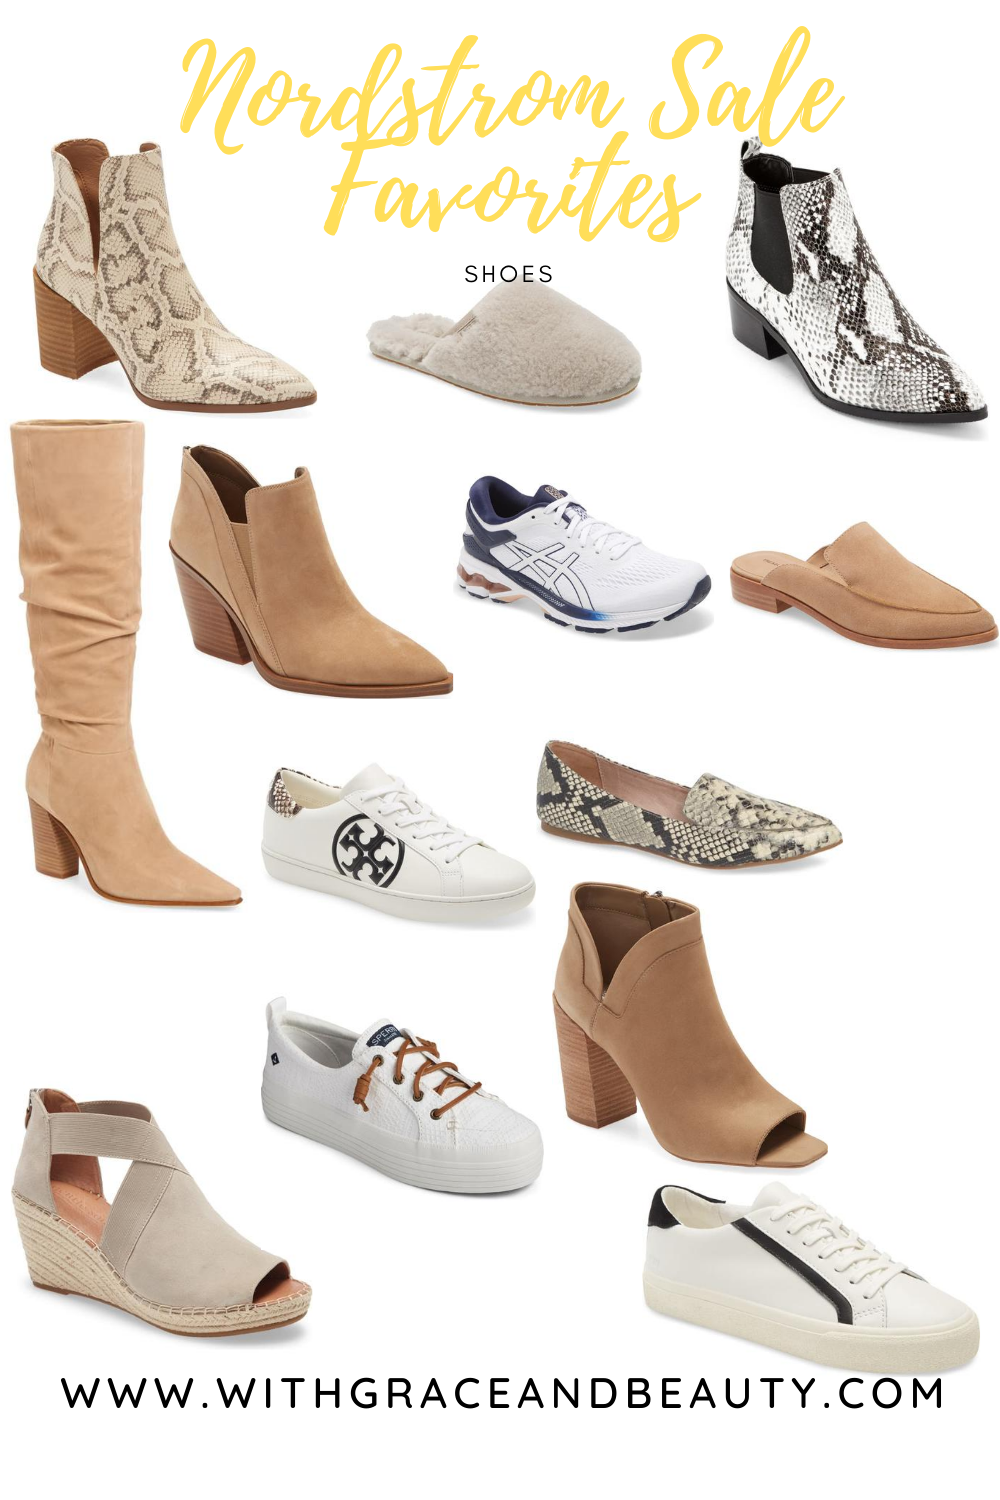 Nordstrom Sale Favorites - Shoes | www.withgraceandbeauty.com